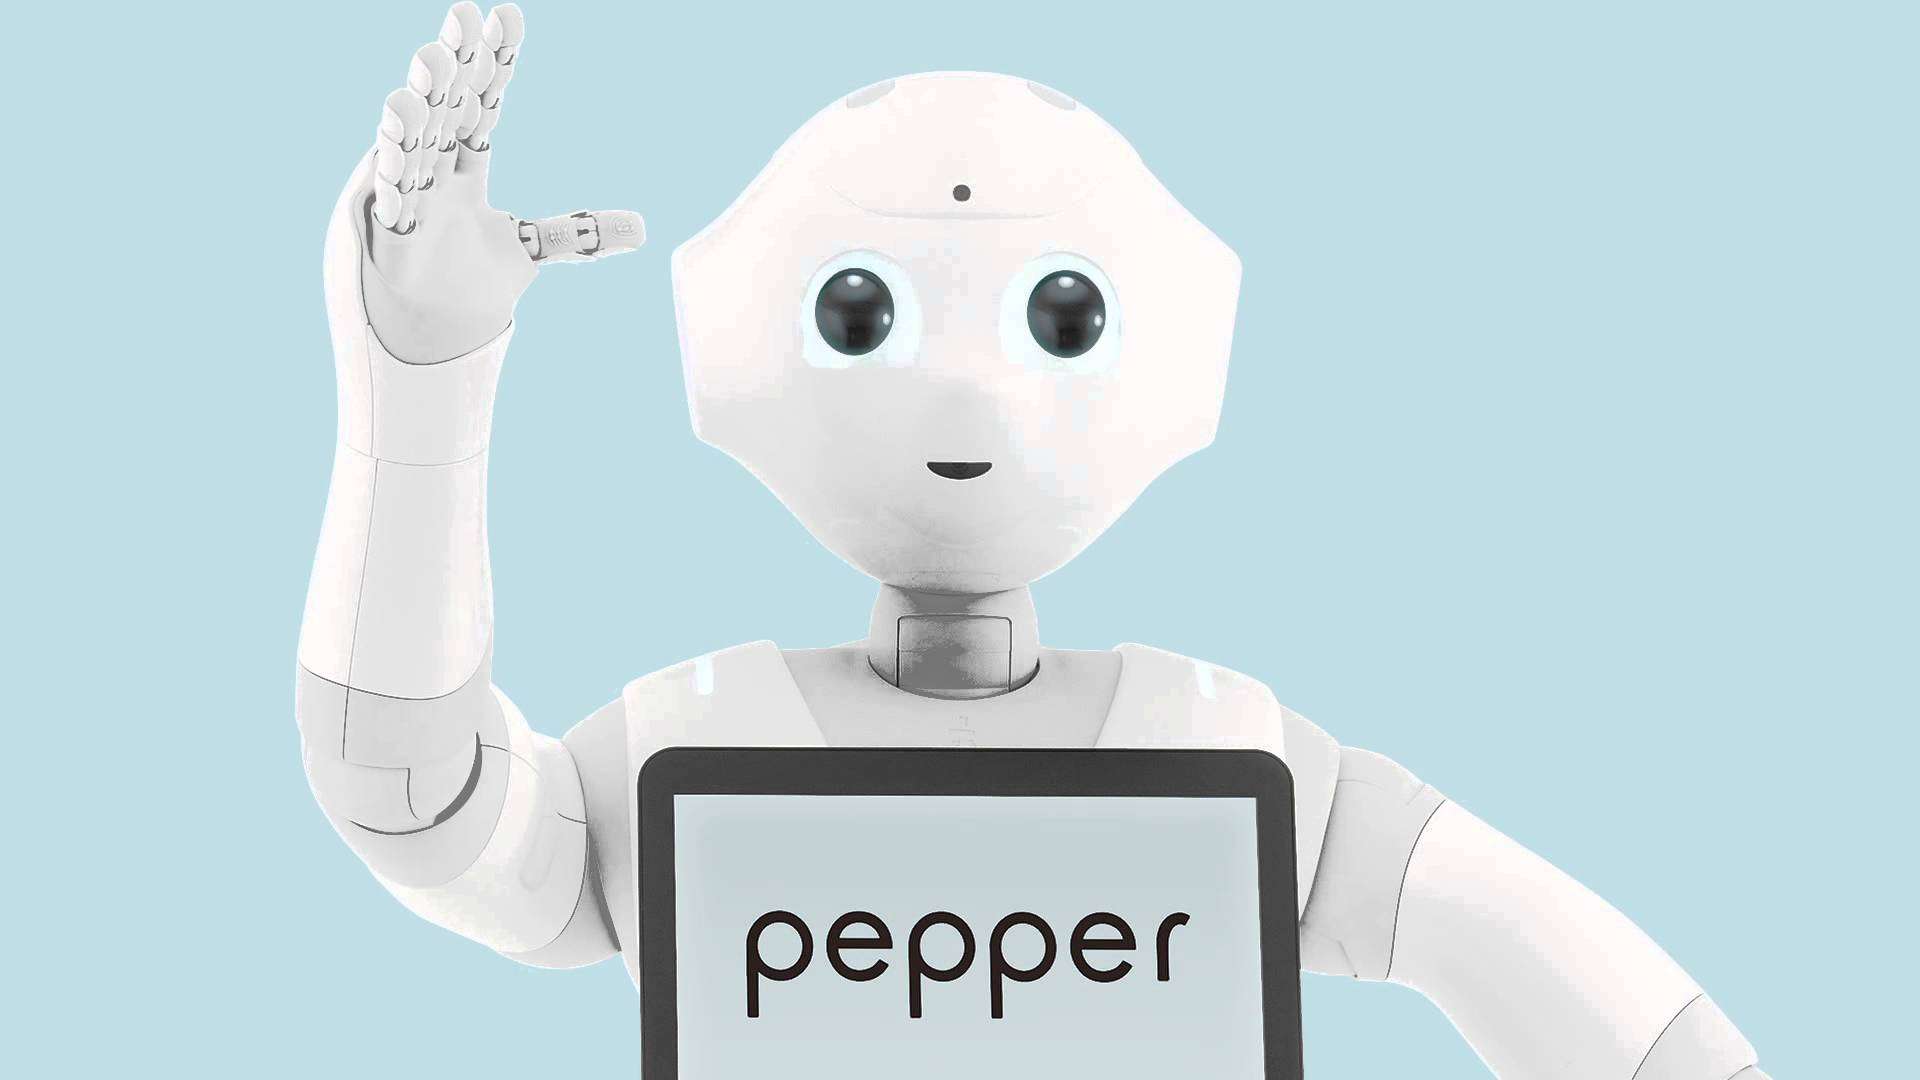 ソフトバンク、ロボット事業の人員削減　「ペッパー」が売れなかったため